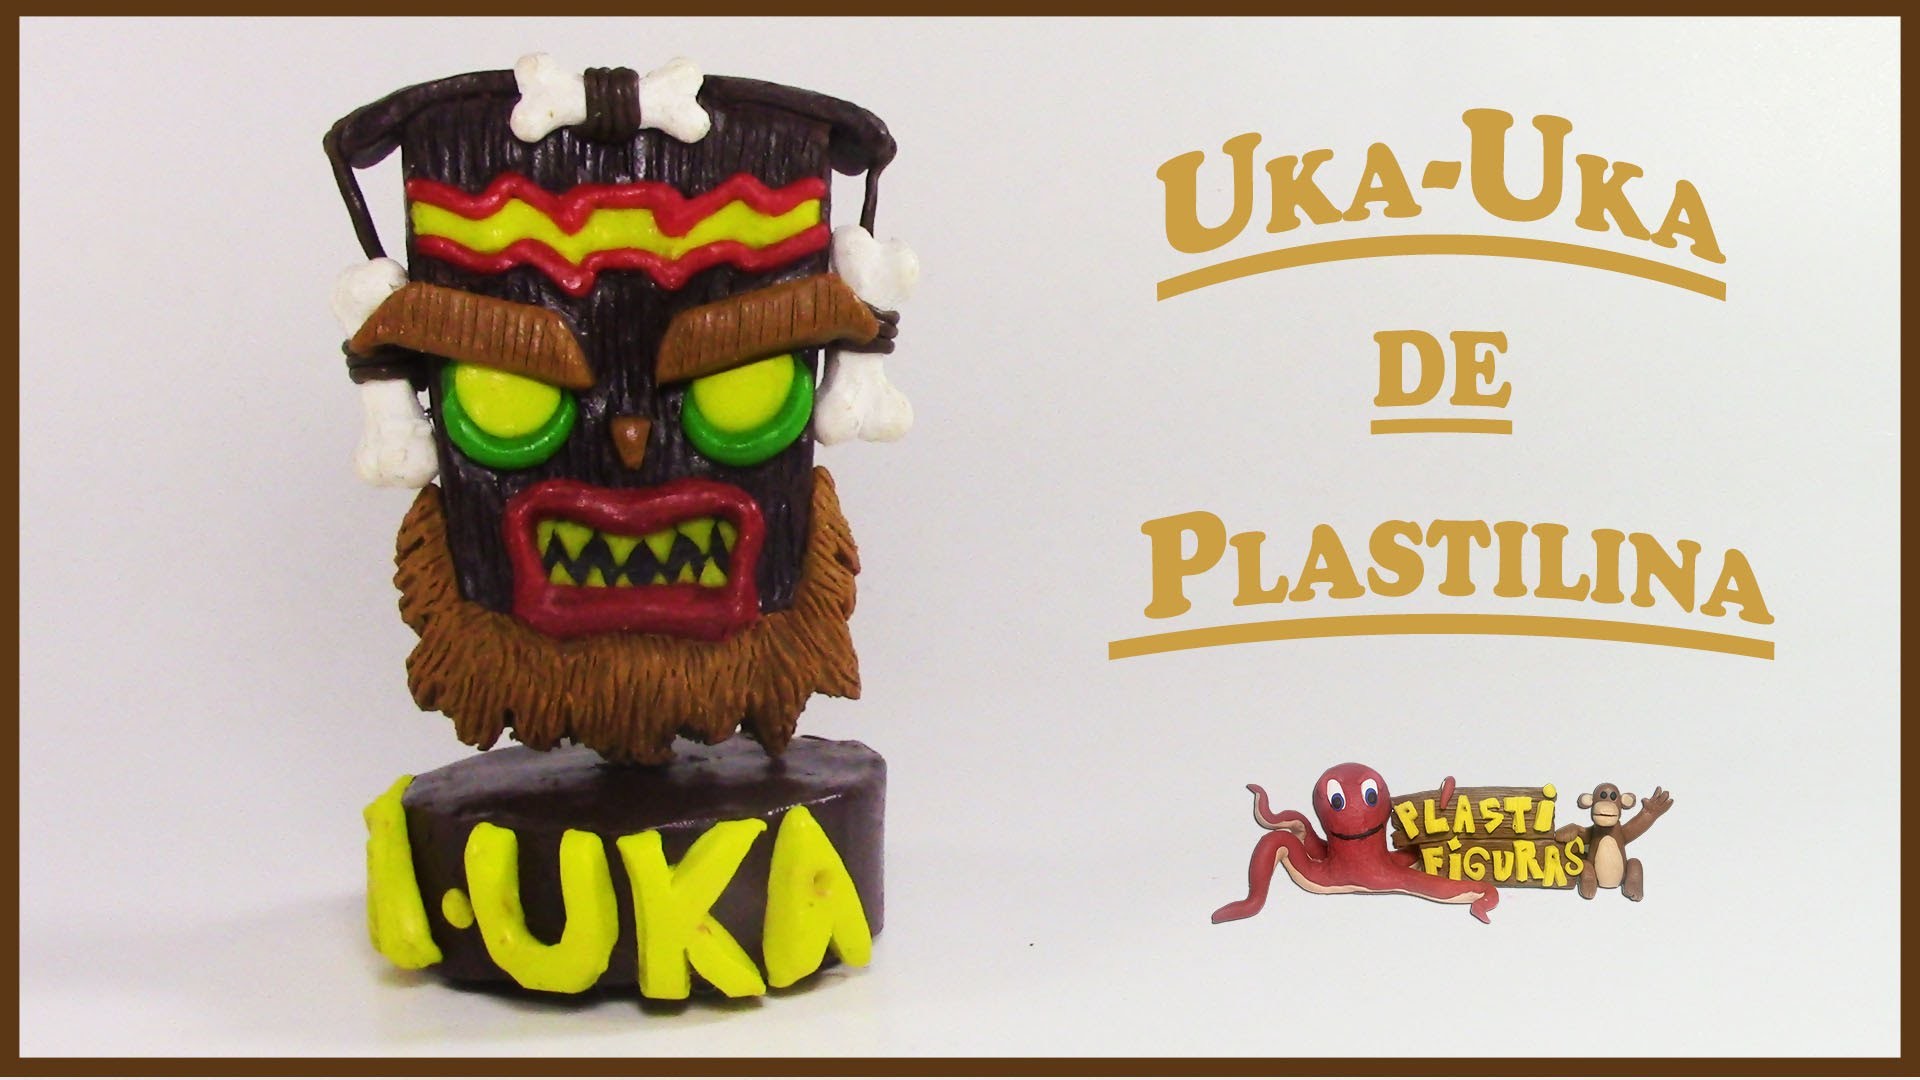 Como Hacer a UKA-UKA de Plastilina.Porcelana Fria.How To Make UKA-UKA with Clay.Plasticine